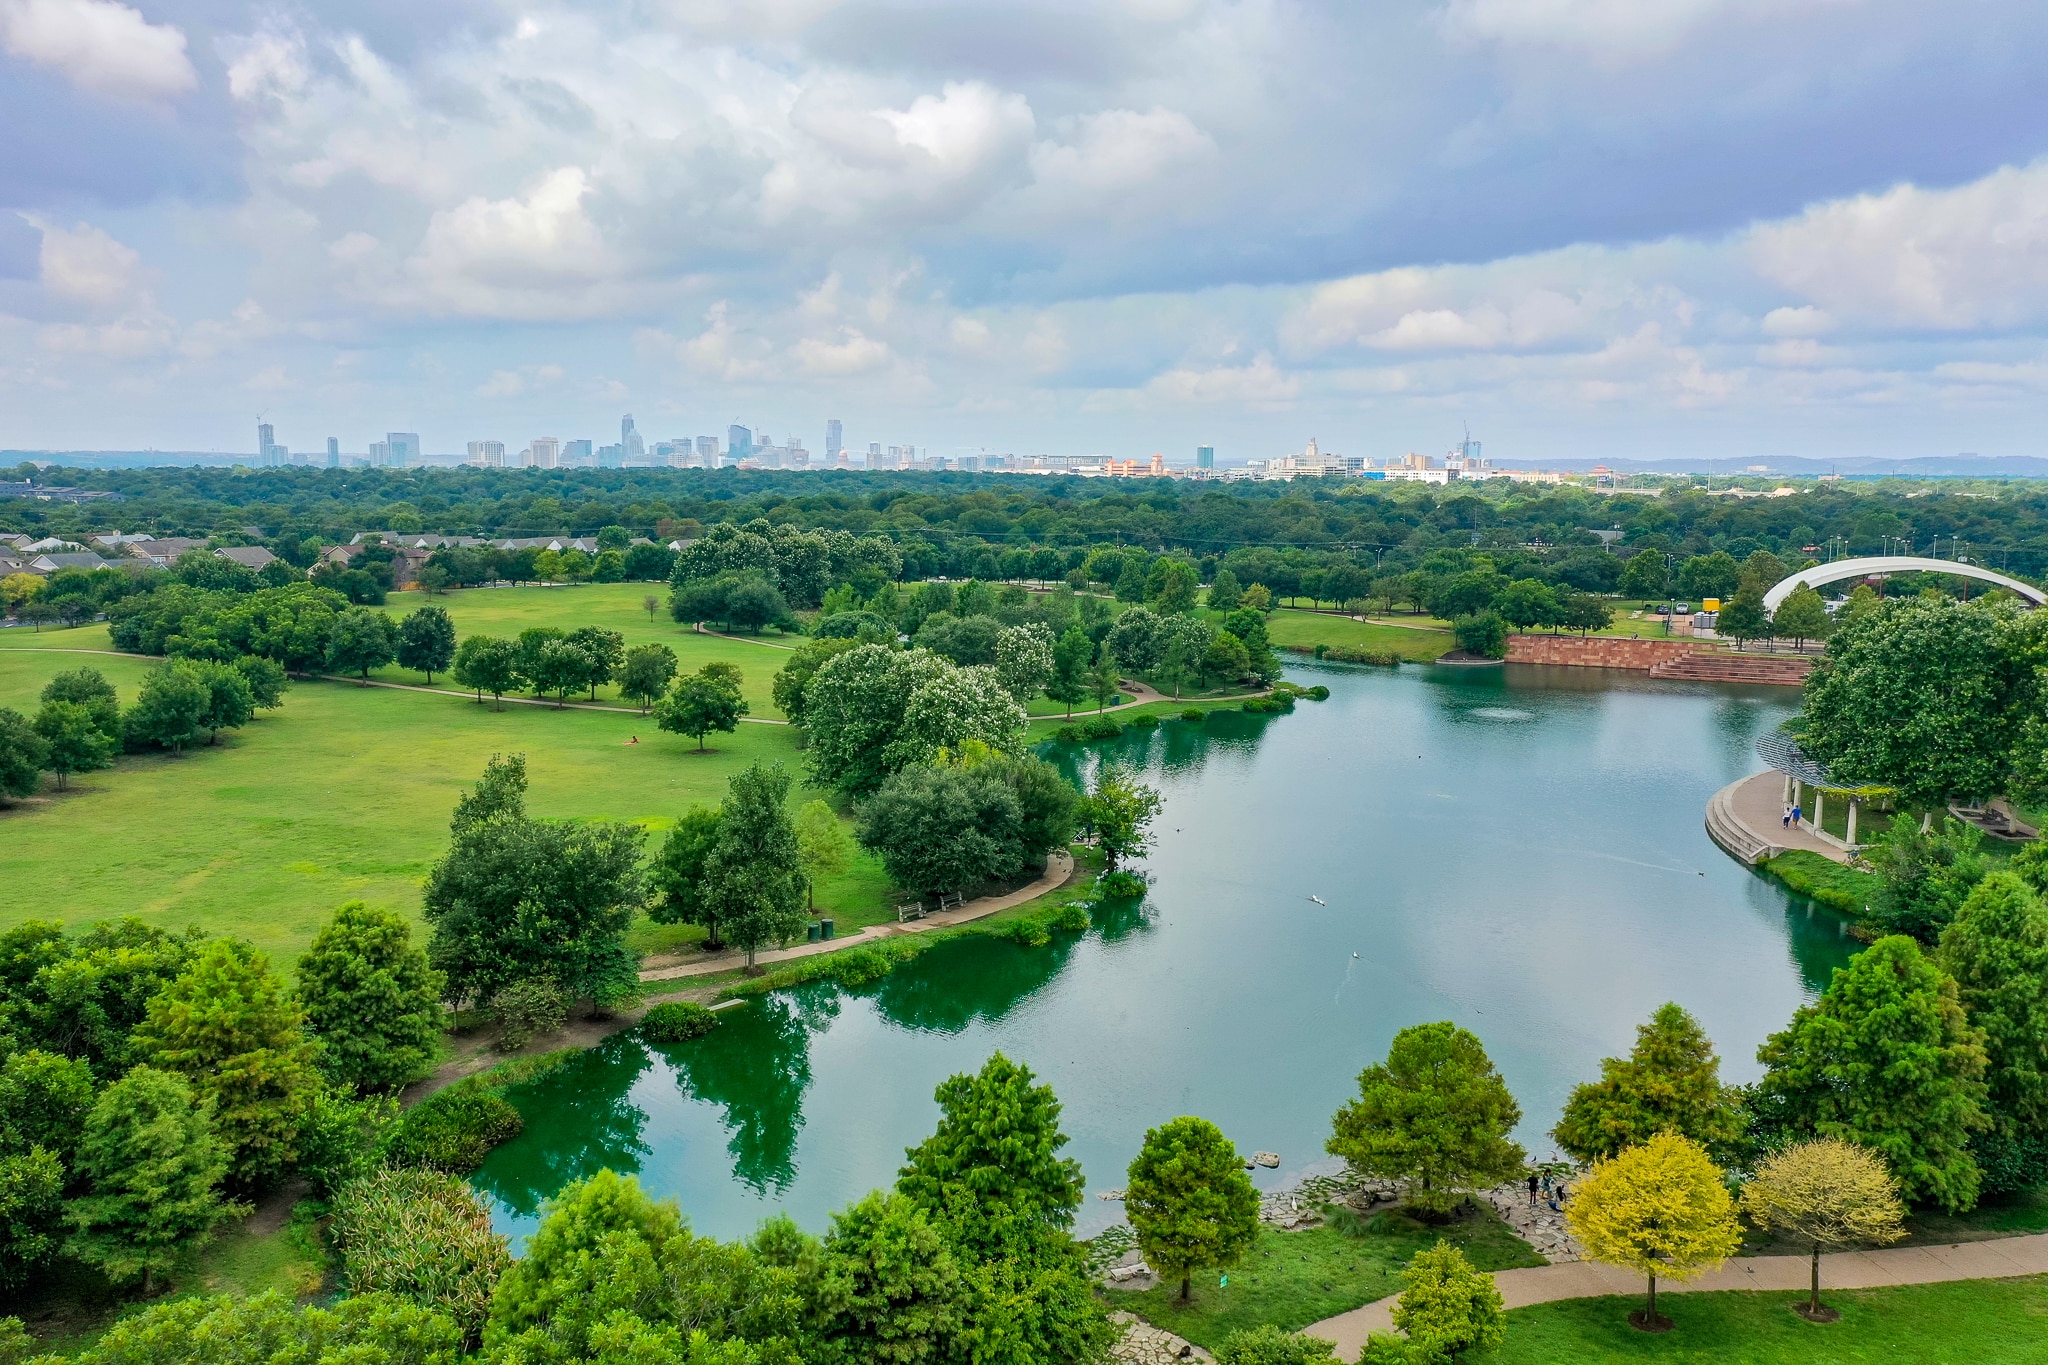 Top 10 Parks in Austin in 2021